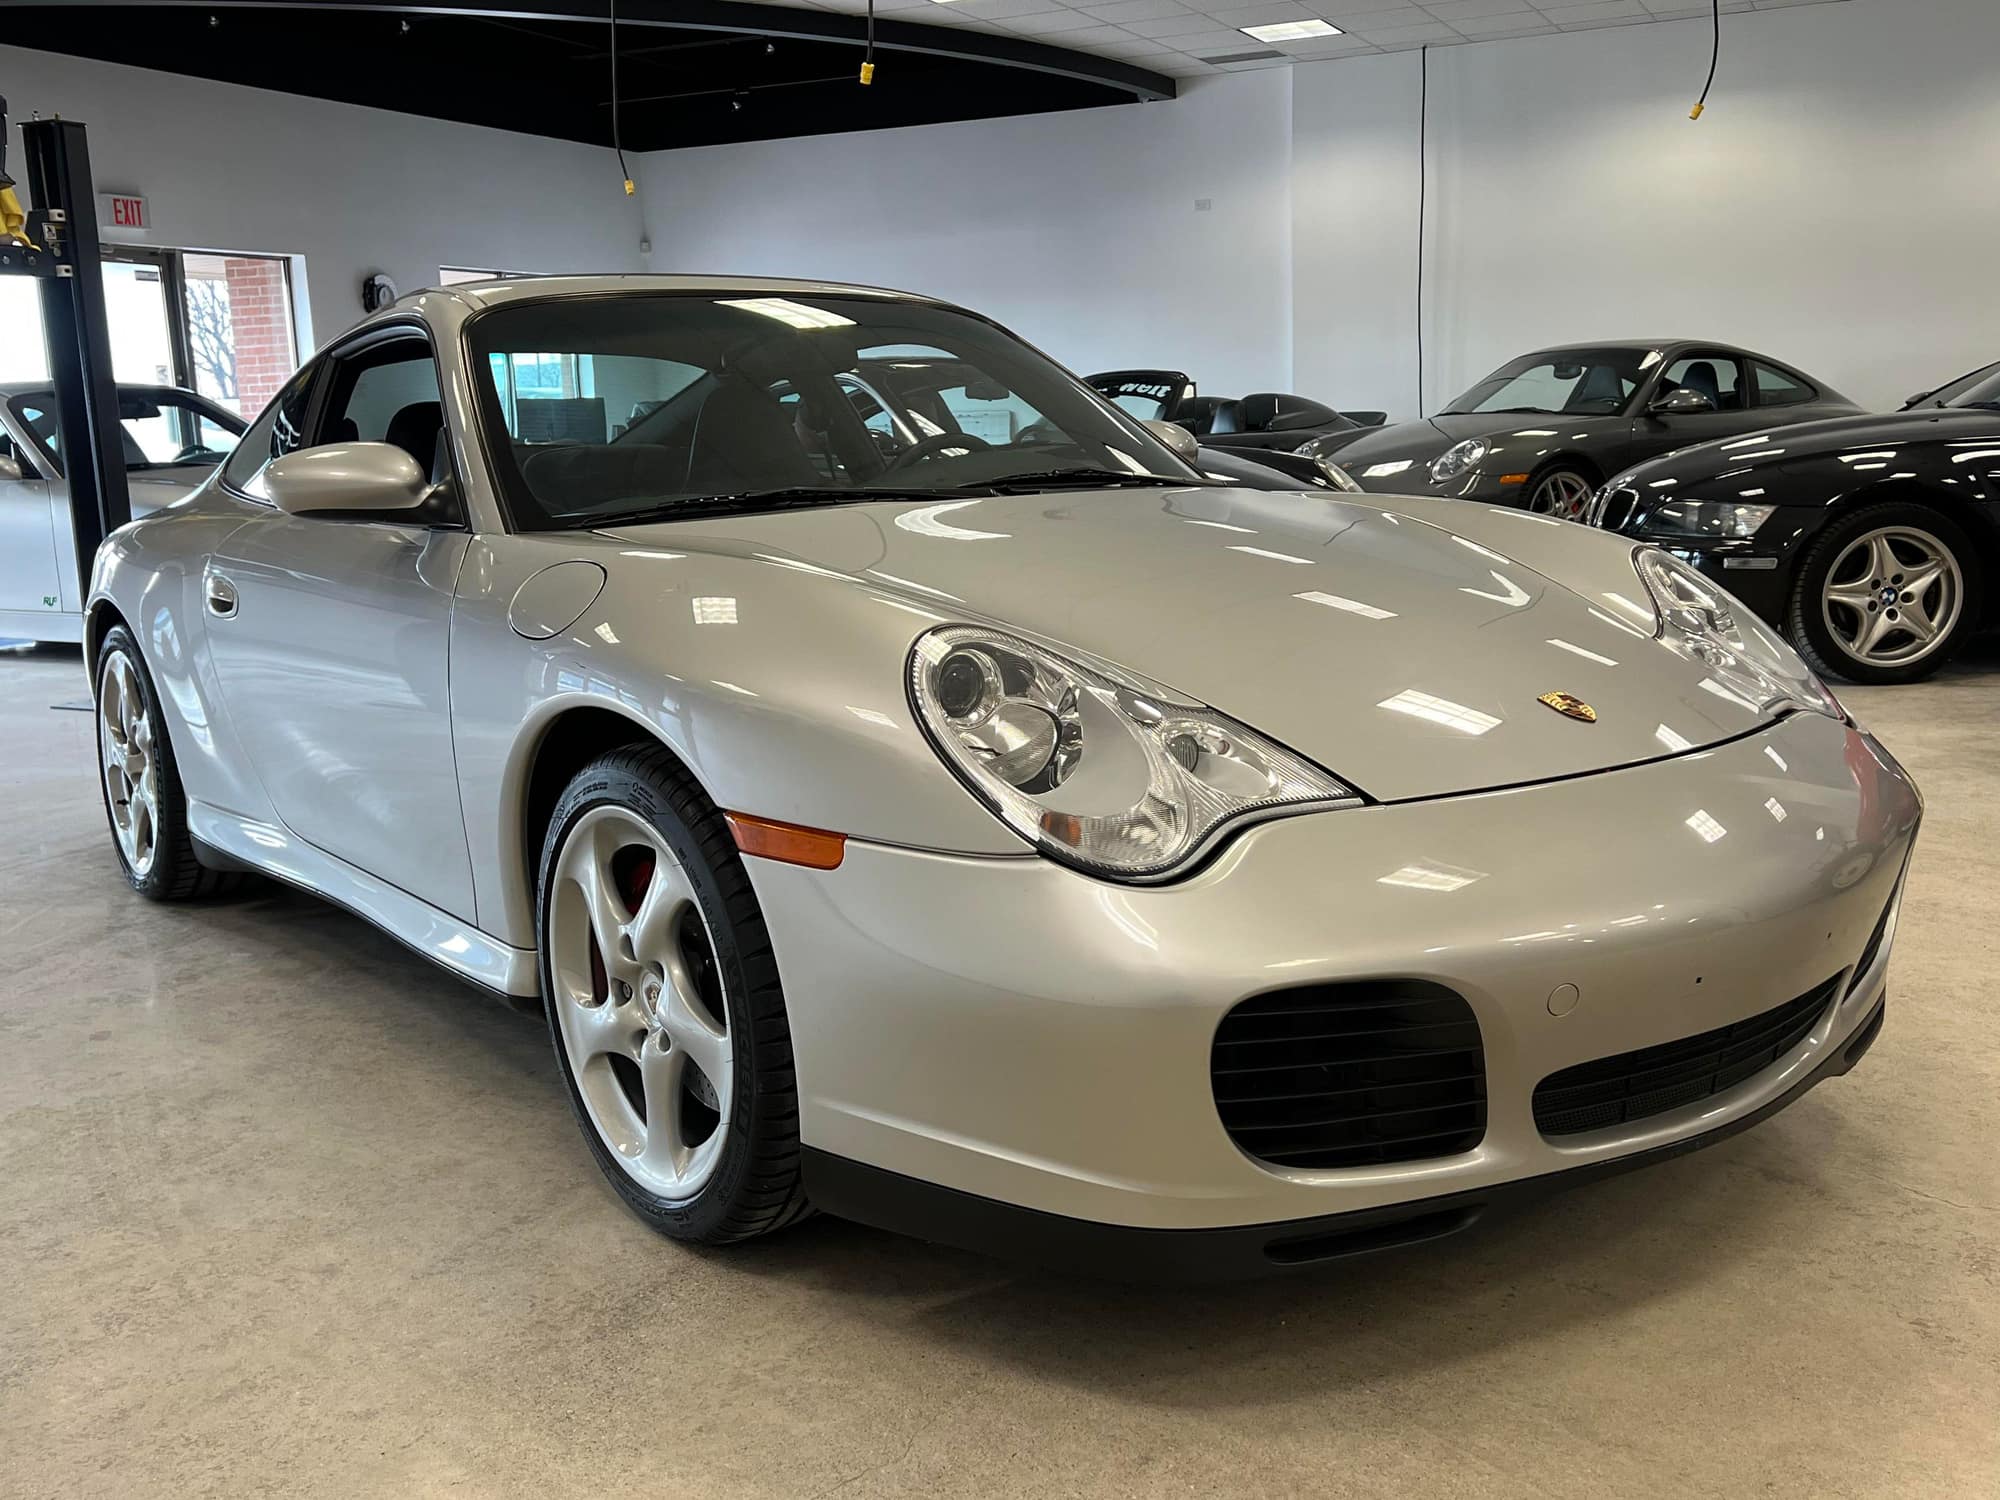 2002 Porsche 911 - 2002 Porsche 911 (996) Carrera 4S - 6-speed - 22k miles - Sport Seats/Sport Exhaust - Used - Detroit, MI 48236, United States